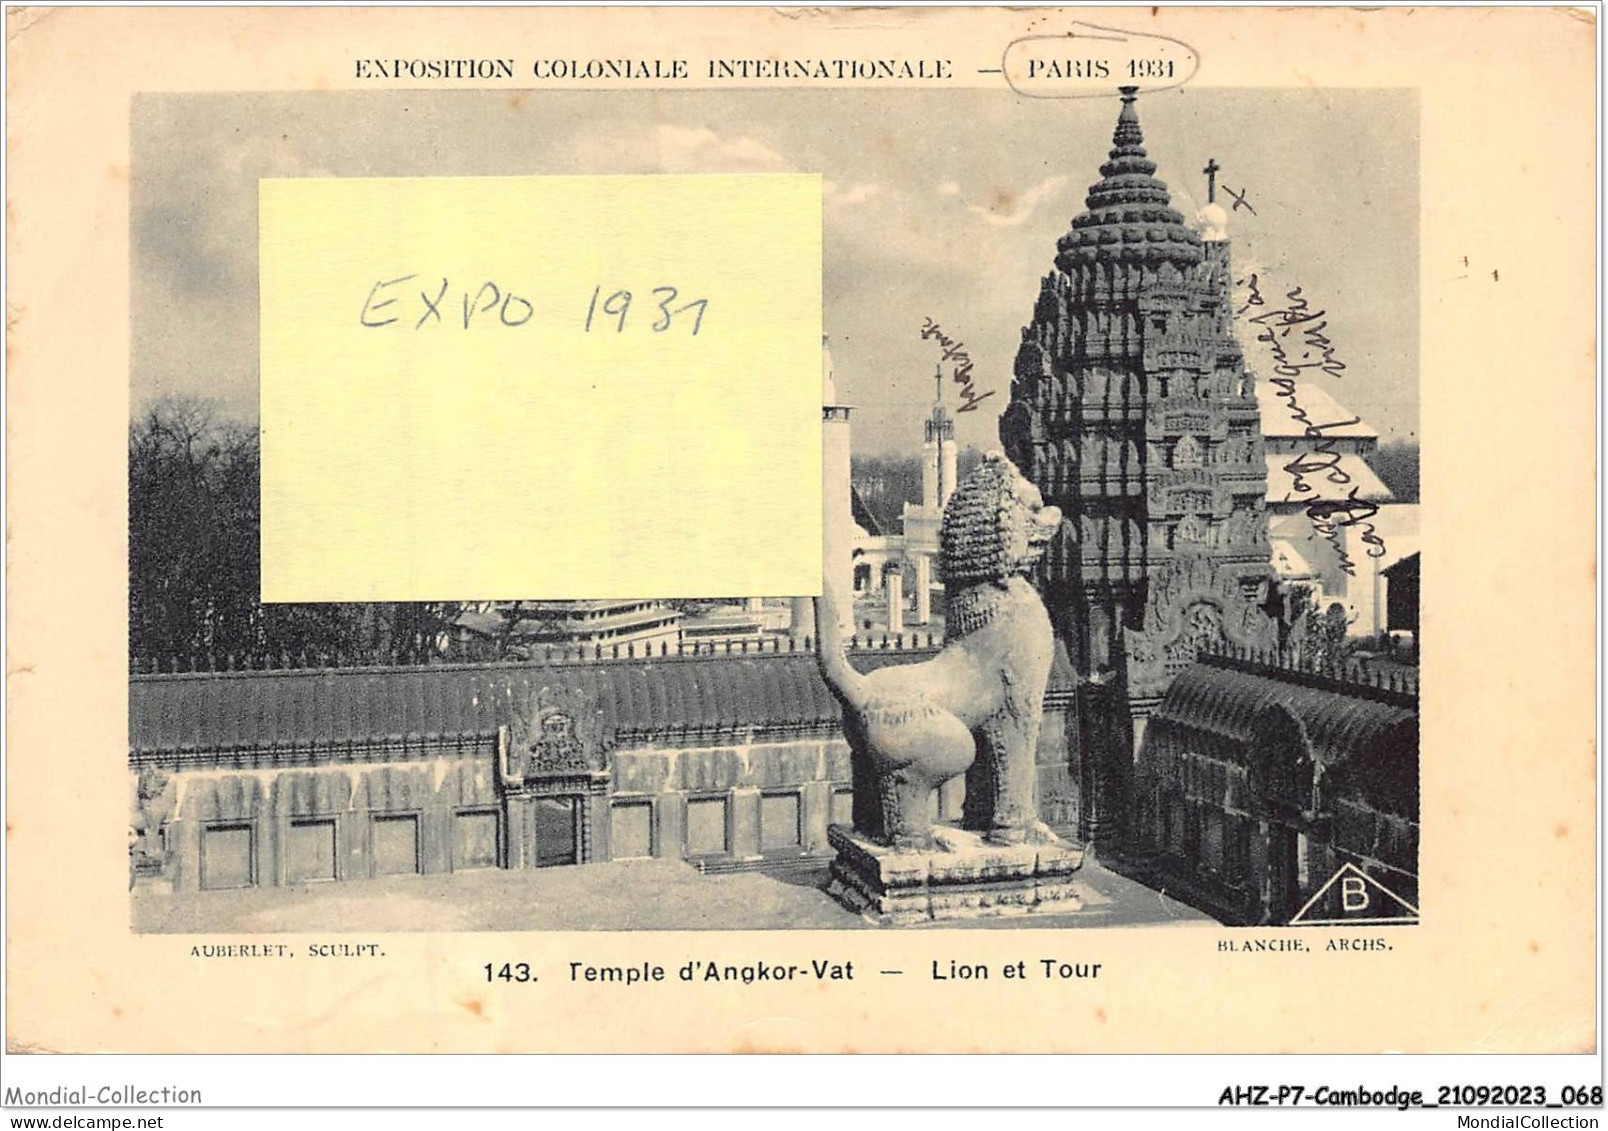 AHZP7-CAMBODGE-0630 - EXPOSITION COLONIALE INTERNATIONALE - PARIS 1931 - TEMPLE D'ANGKOR-VAT - LION ET TOUR - Cambodge